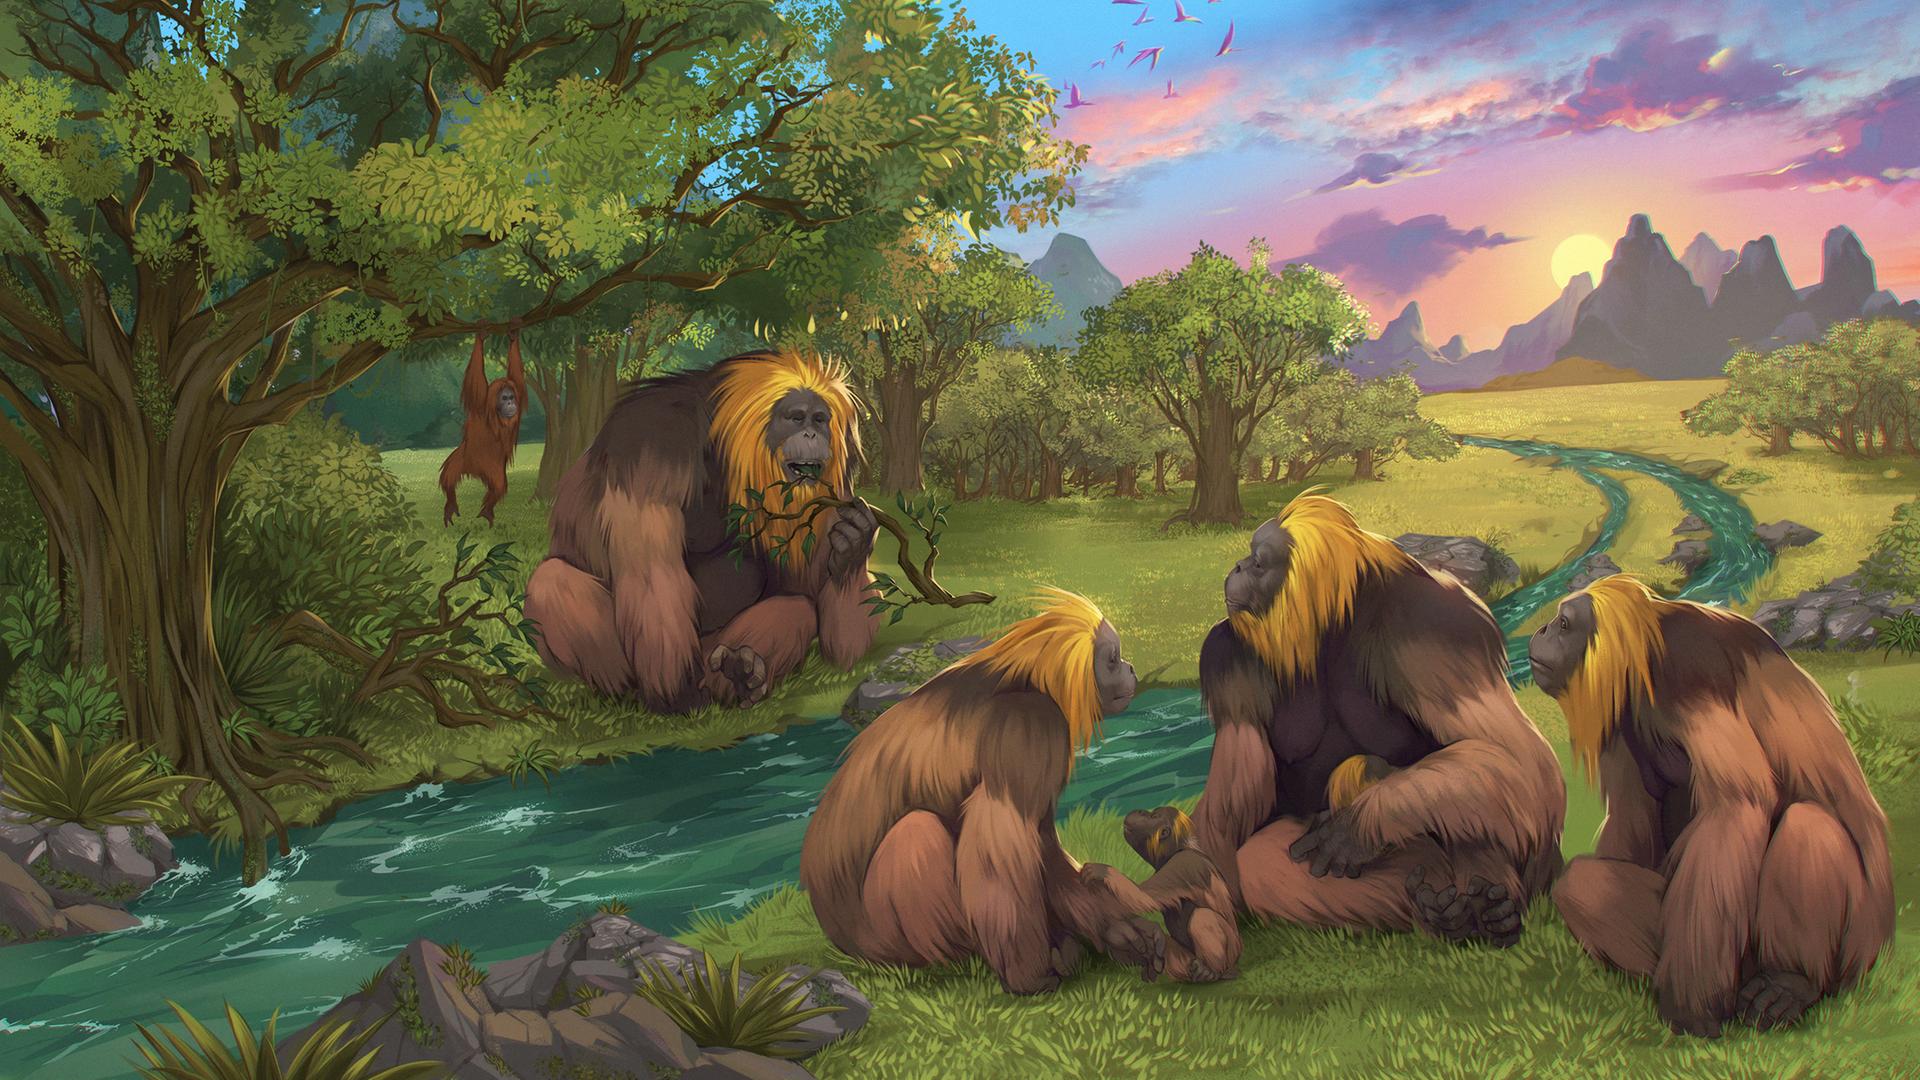 Eine Illustration zeigt eine Gruppe Menschenaffen, die an einem Flüsschen in prähistorischer Umgebung sitzt.